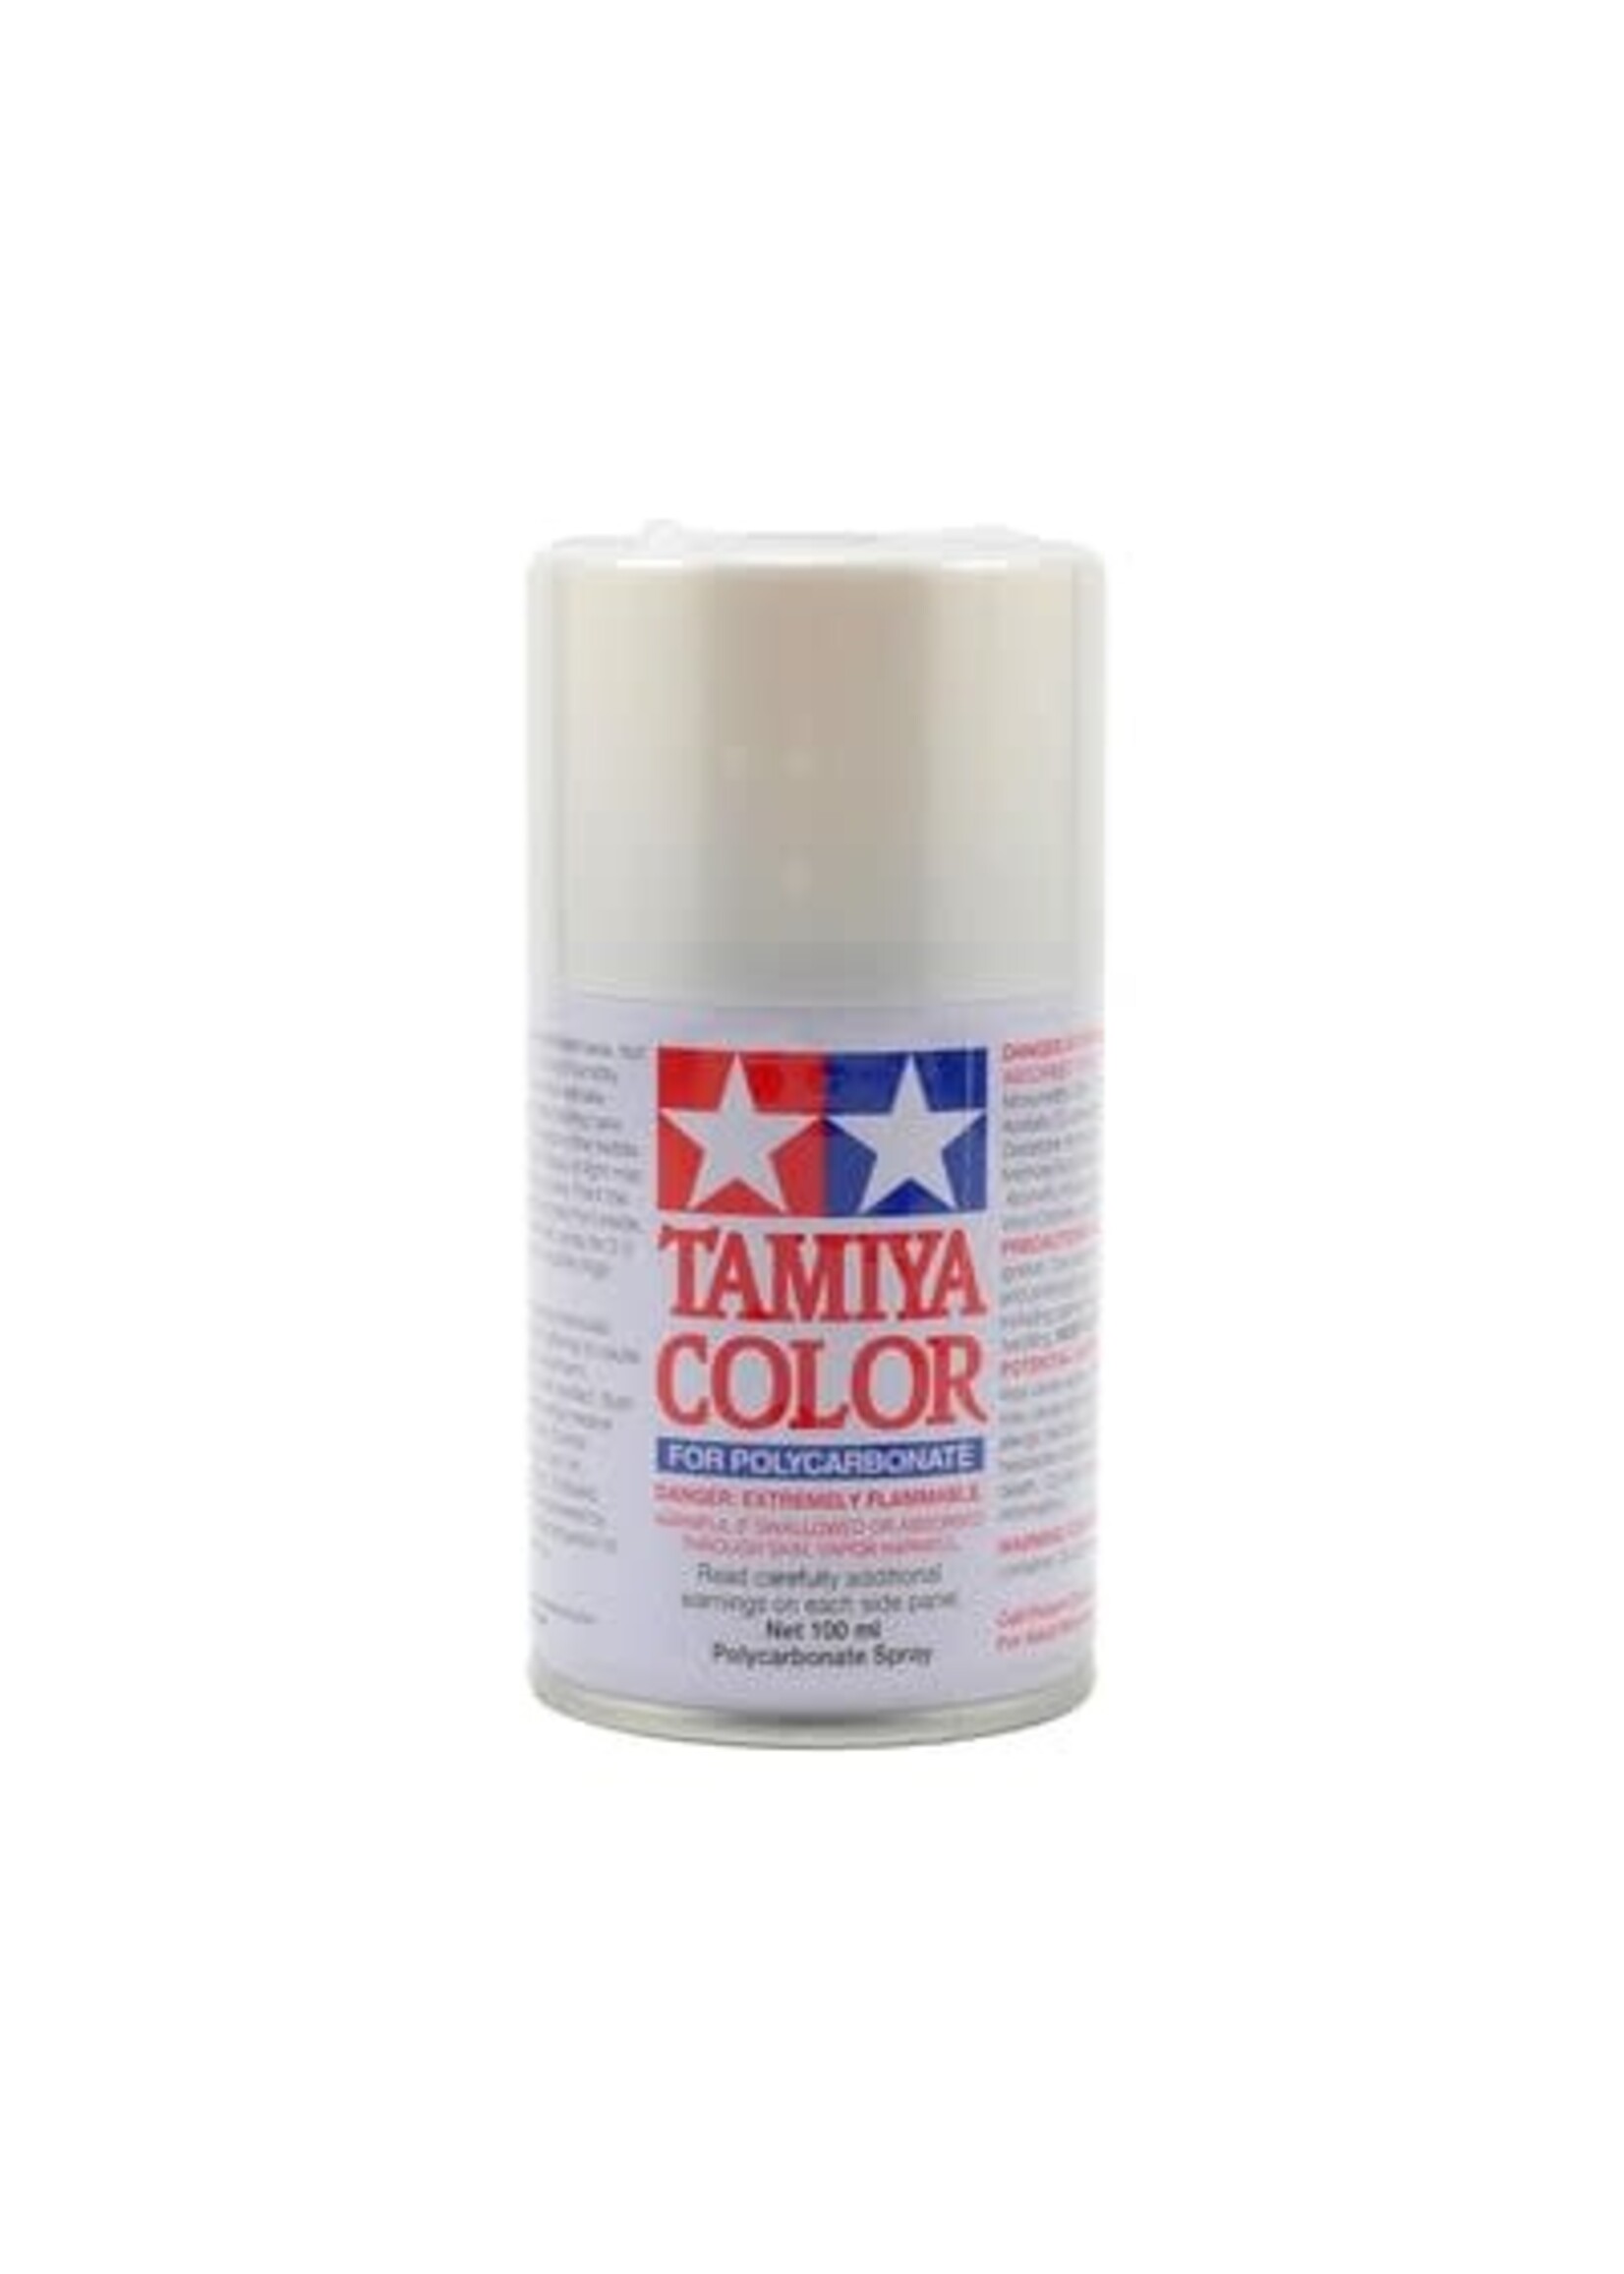 Tamiya TAM86057 Tamiya PS-57 Pearl White Lexan Spray Paint (100ml)